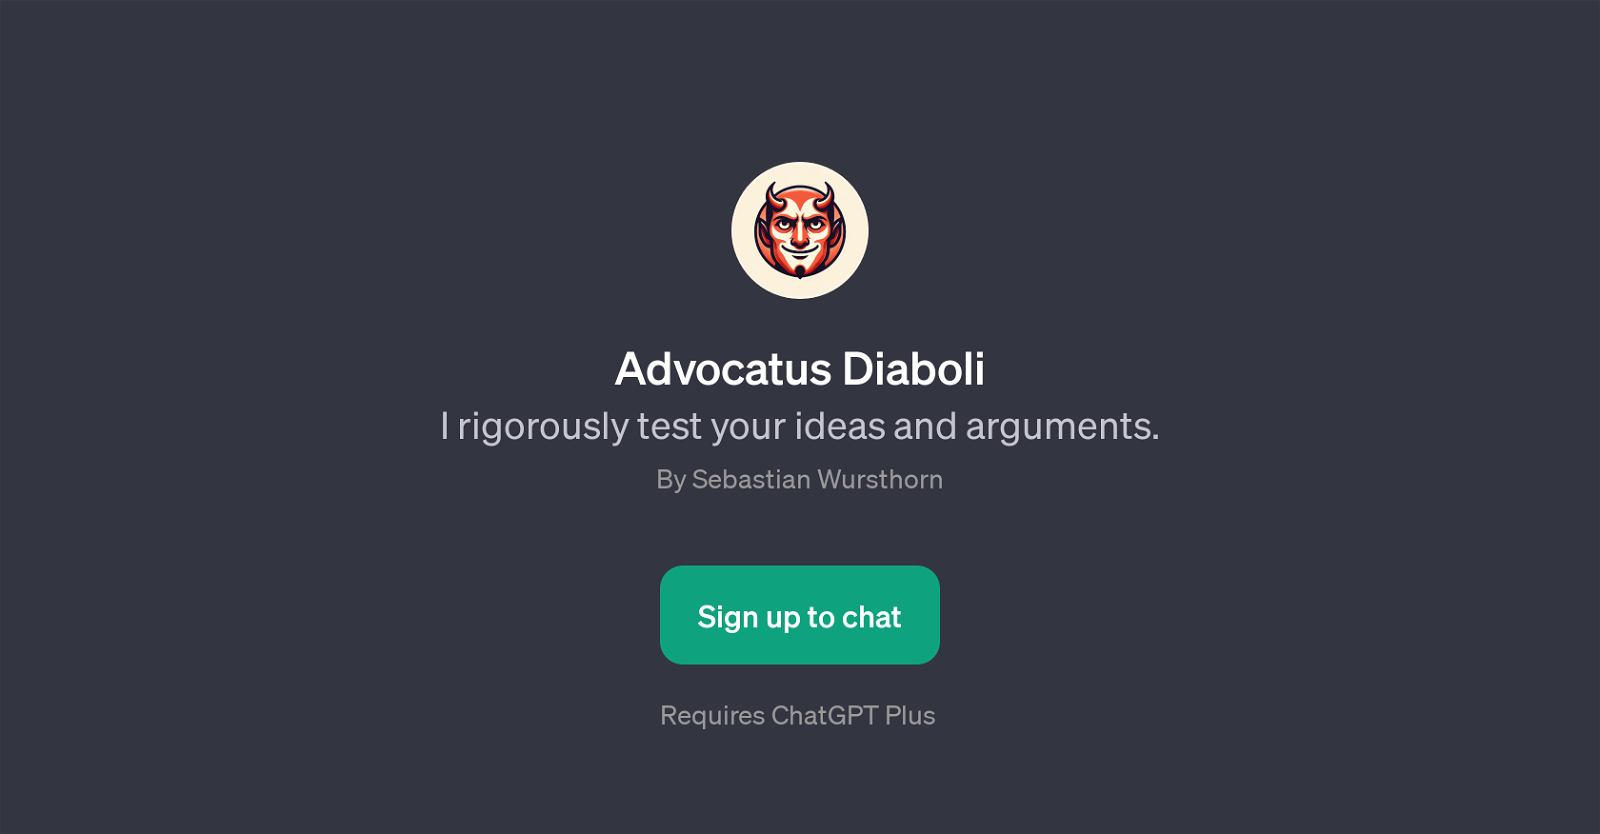 Advocatus Diaboli website